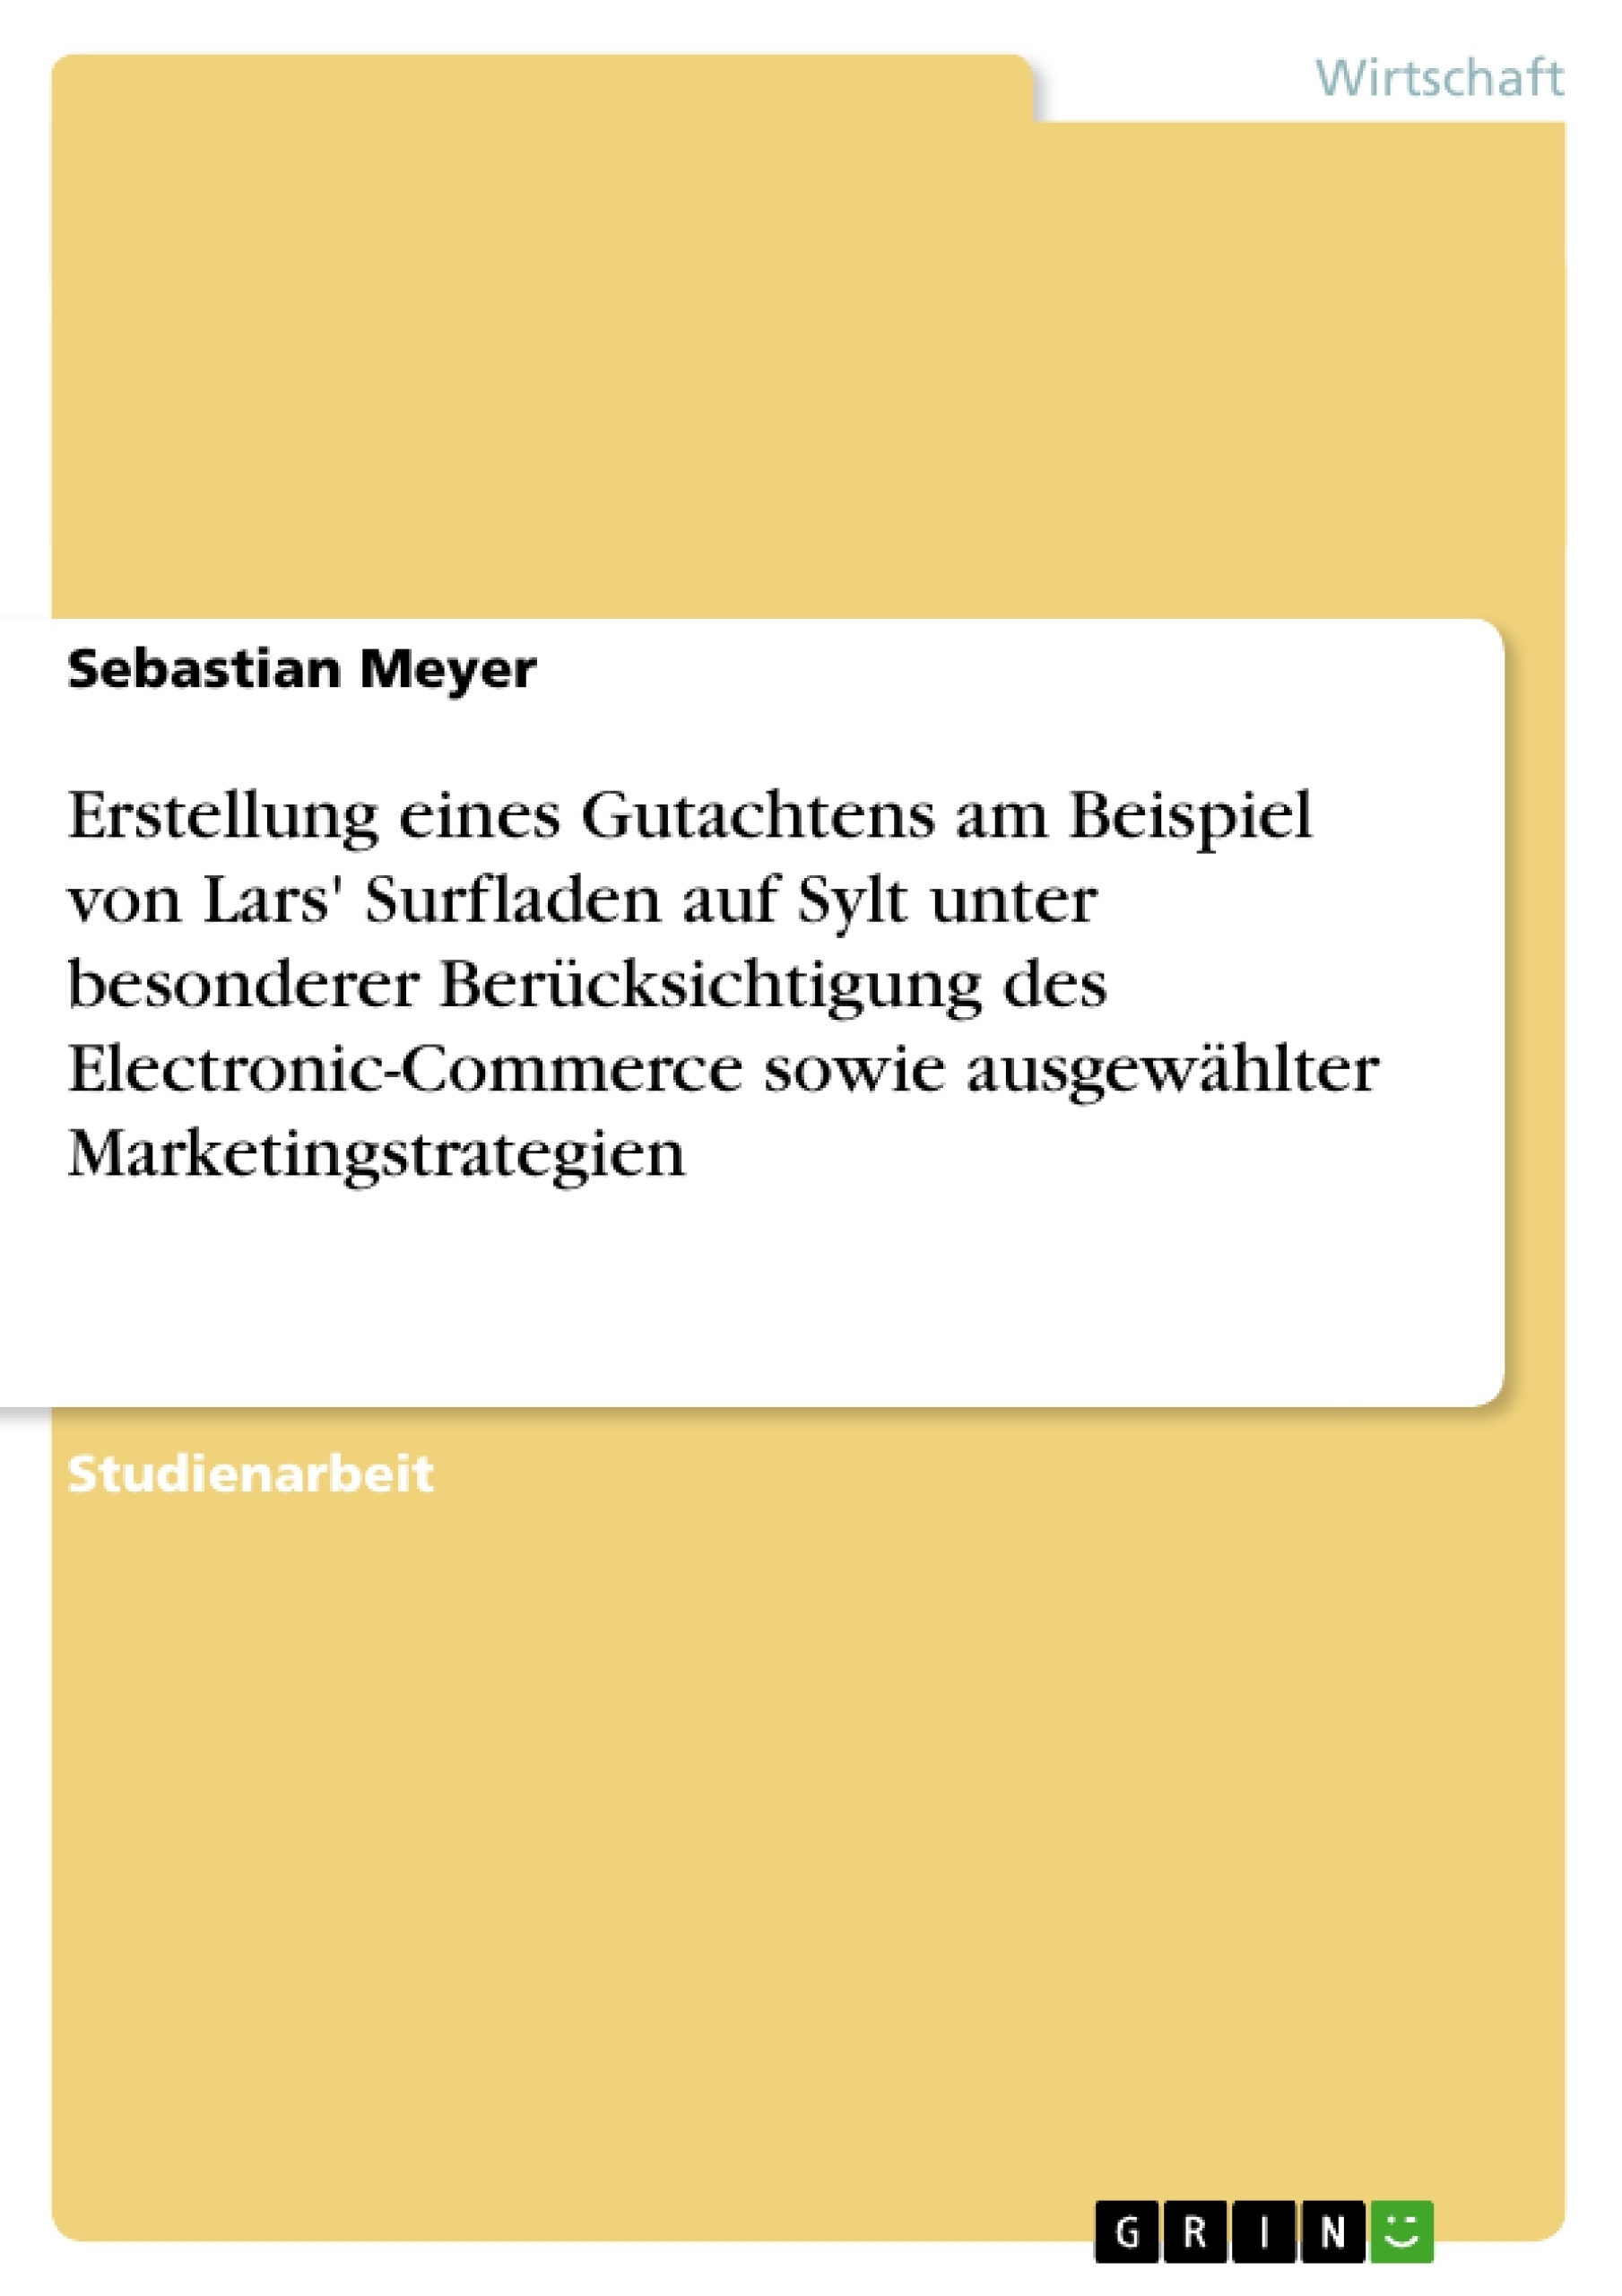 Titel: Erstellung eines Gutachtens am Beispiel von Lars' Surfladen auf Sylt unter besonderer Berücksichtigung des Electronic-Commerce sowie ausgewählter Marketingstrategien